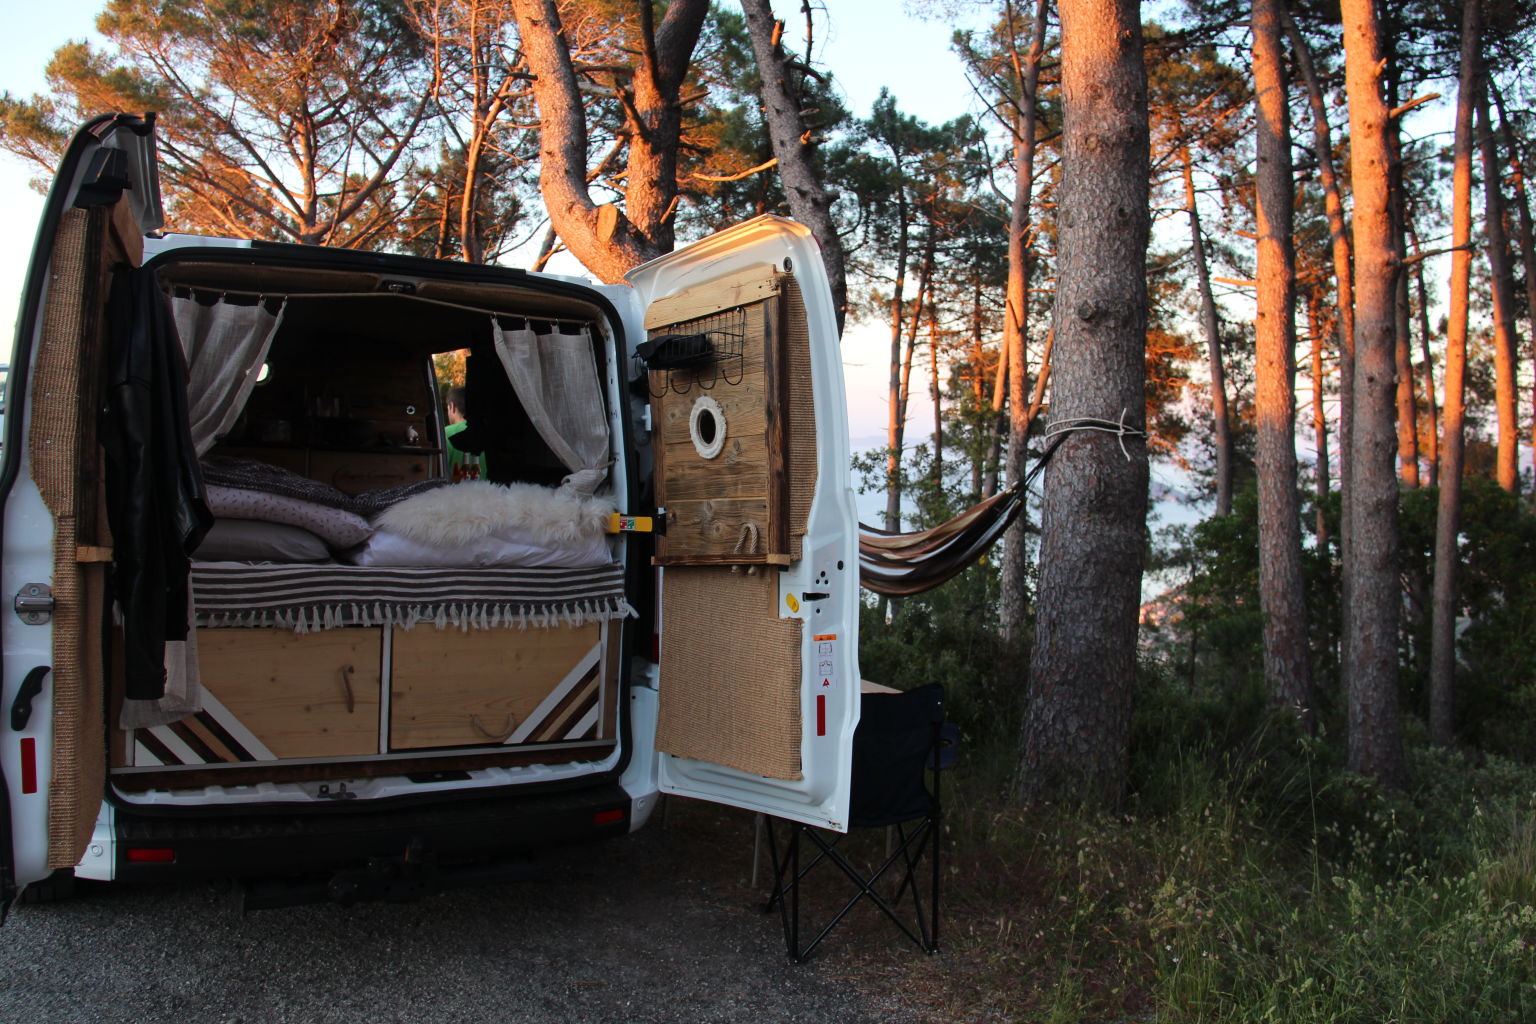 Renovierter Van als Wohnmobil vor einem Wald in der Abenddämmerung